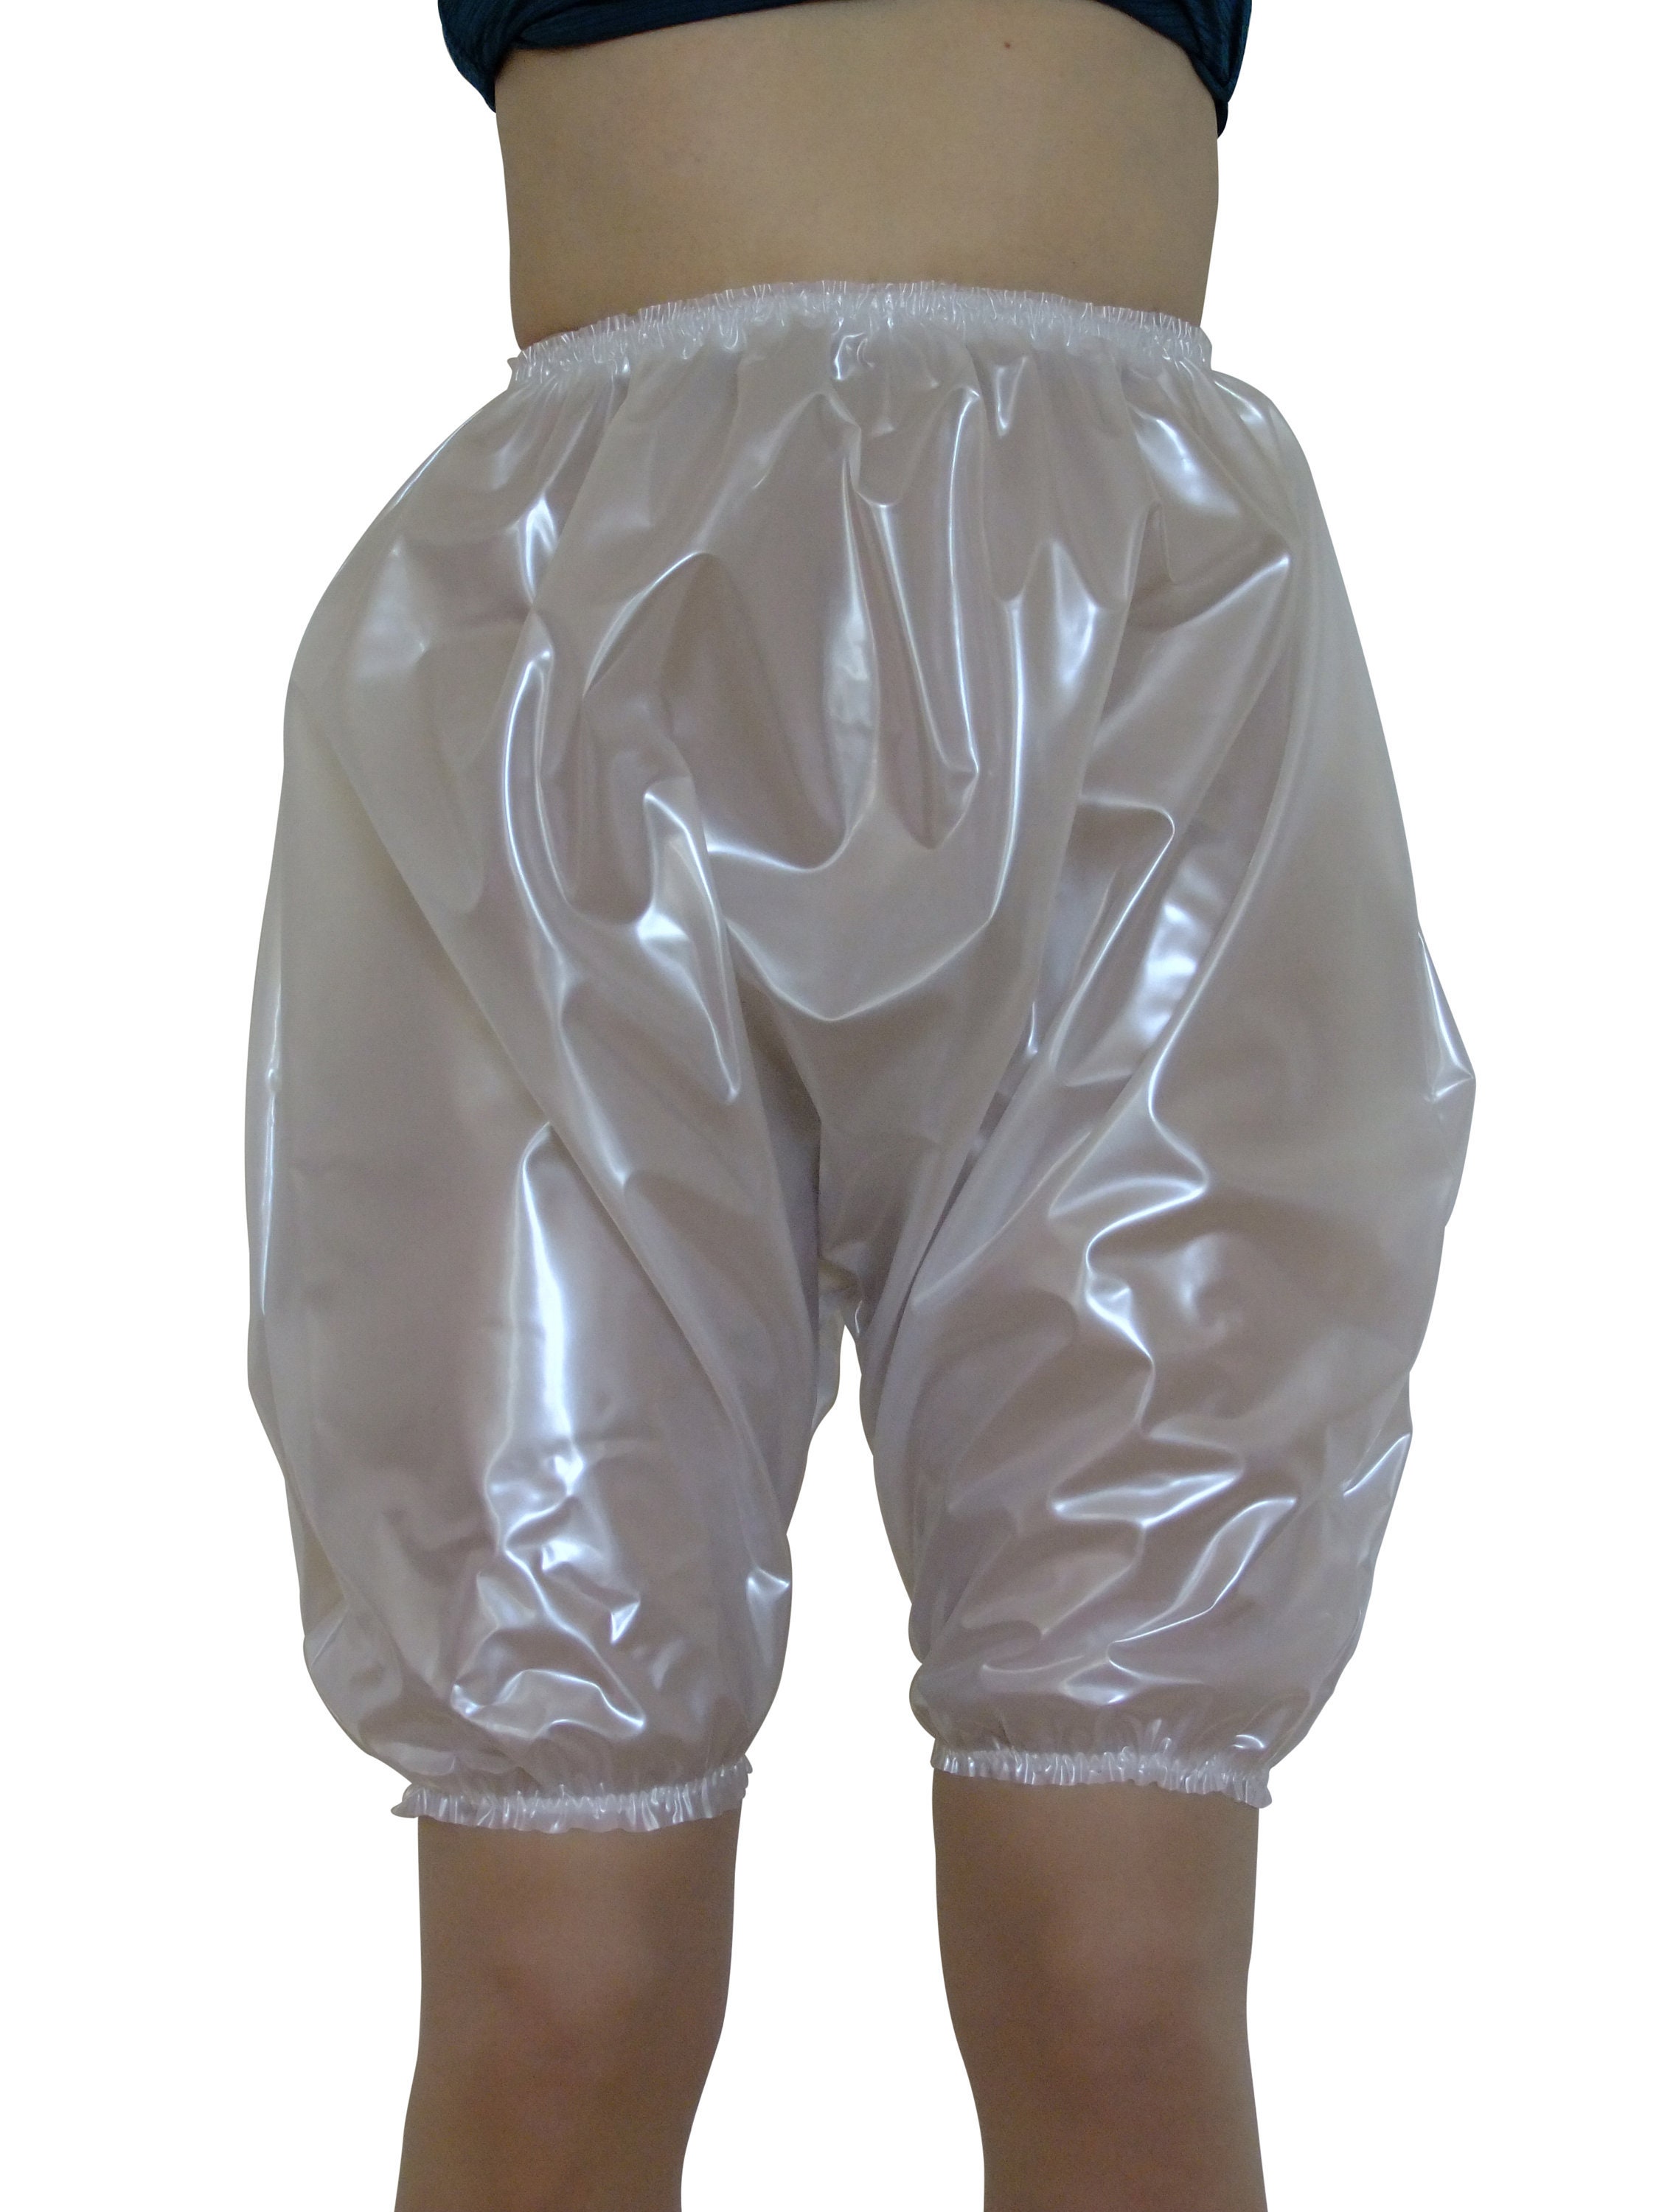 Adult Plastic Pants,Reusable Washable Adult Rubber Pants, Waterproof  Incontinent Underpants,Adult Transparent Polka Dot PVC Open Button Plastic  Shorts